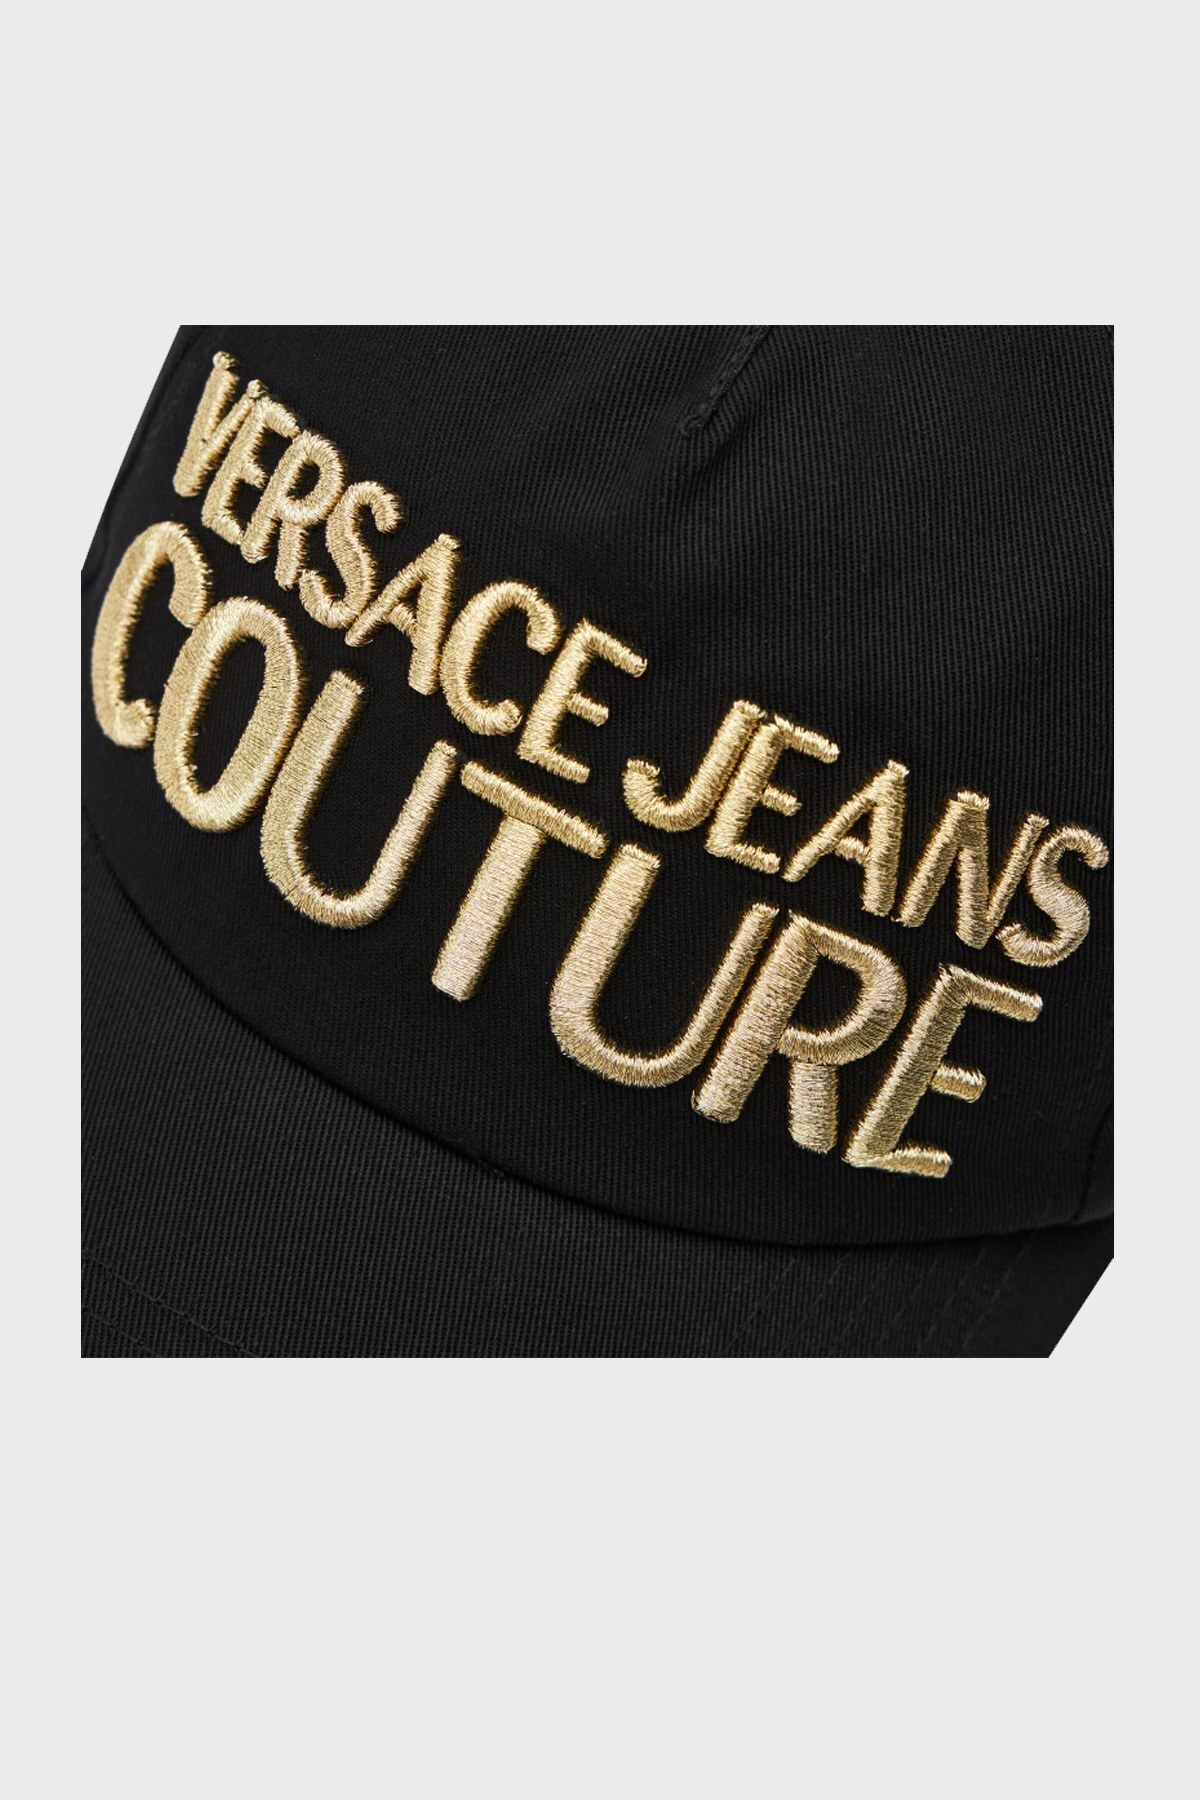 Versace Jeans Couture Marka Logolu Erkek Şapka E8YWAK10 85075 M27 SİYAH